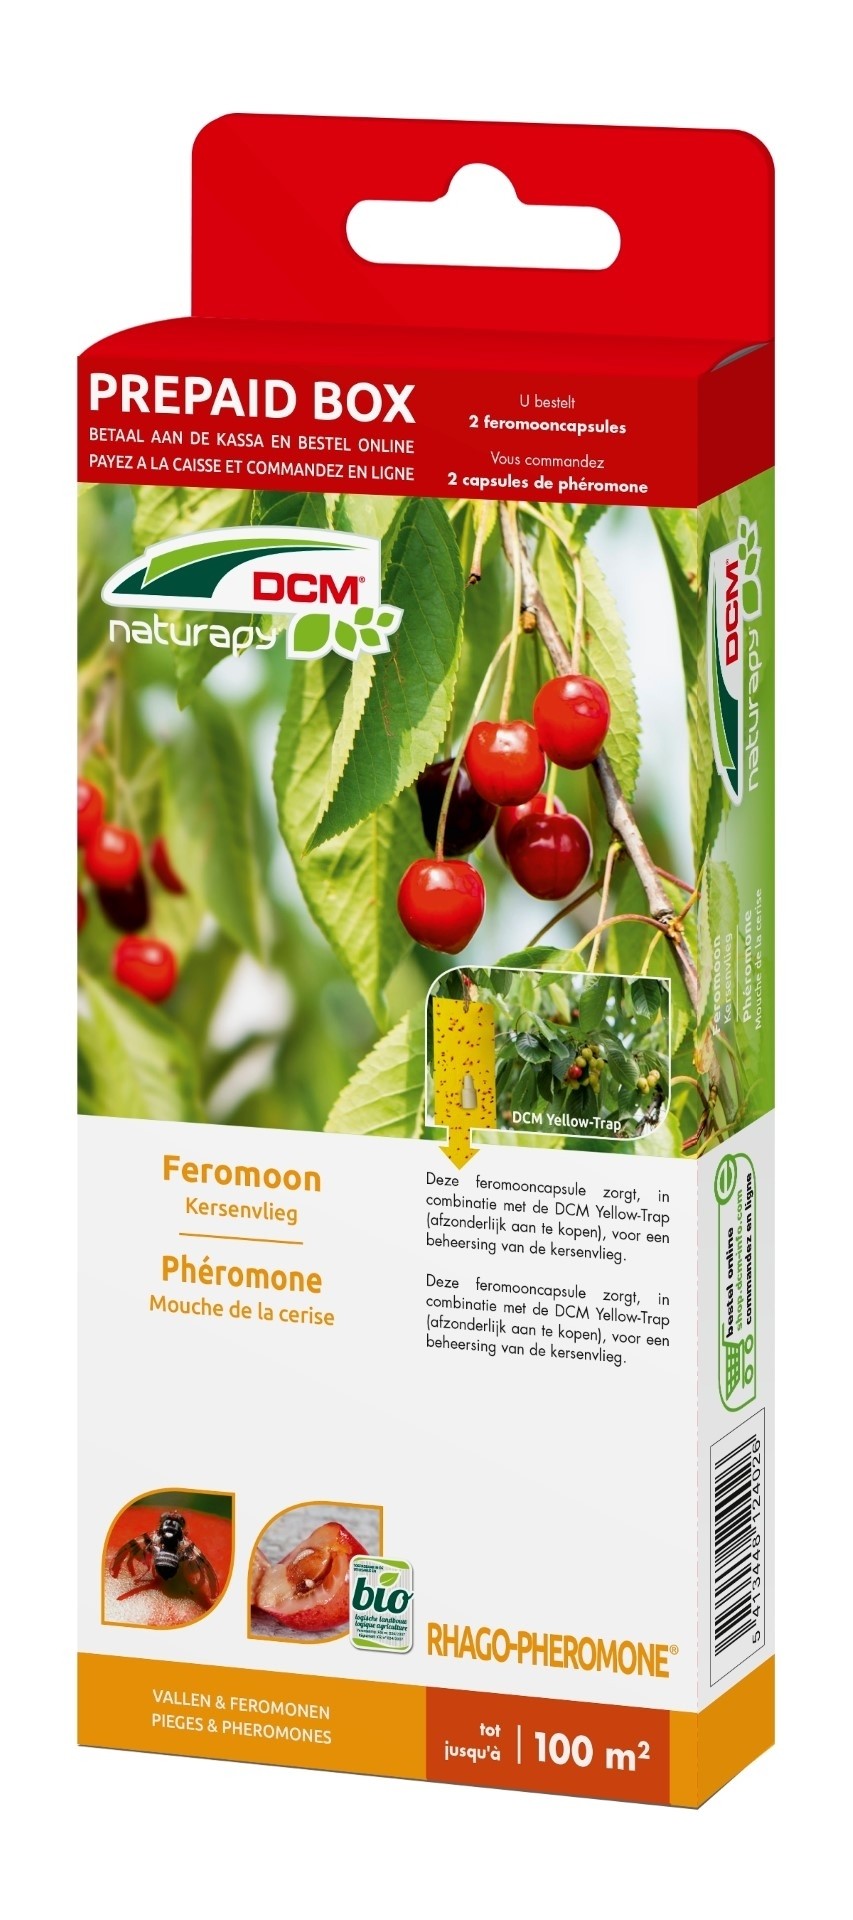 DCM Natuurlijke Vijanden Rhago-Pheromone - Feromoon Kersenvlieg 100 m2 - 